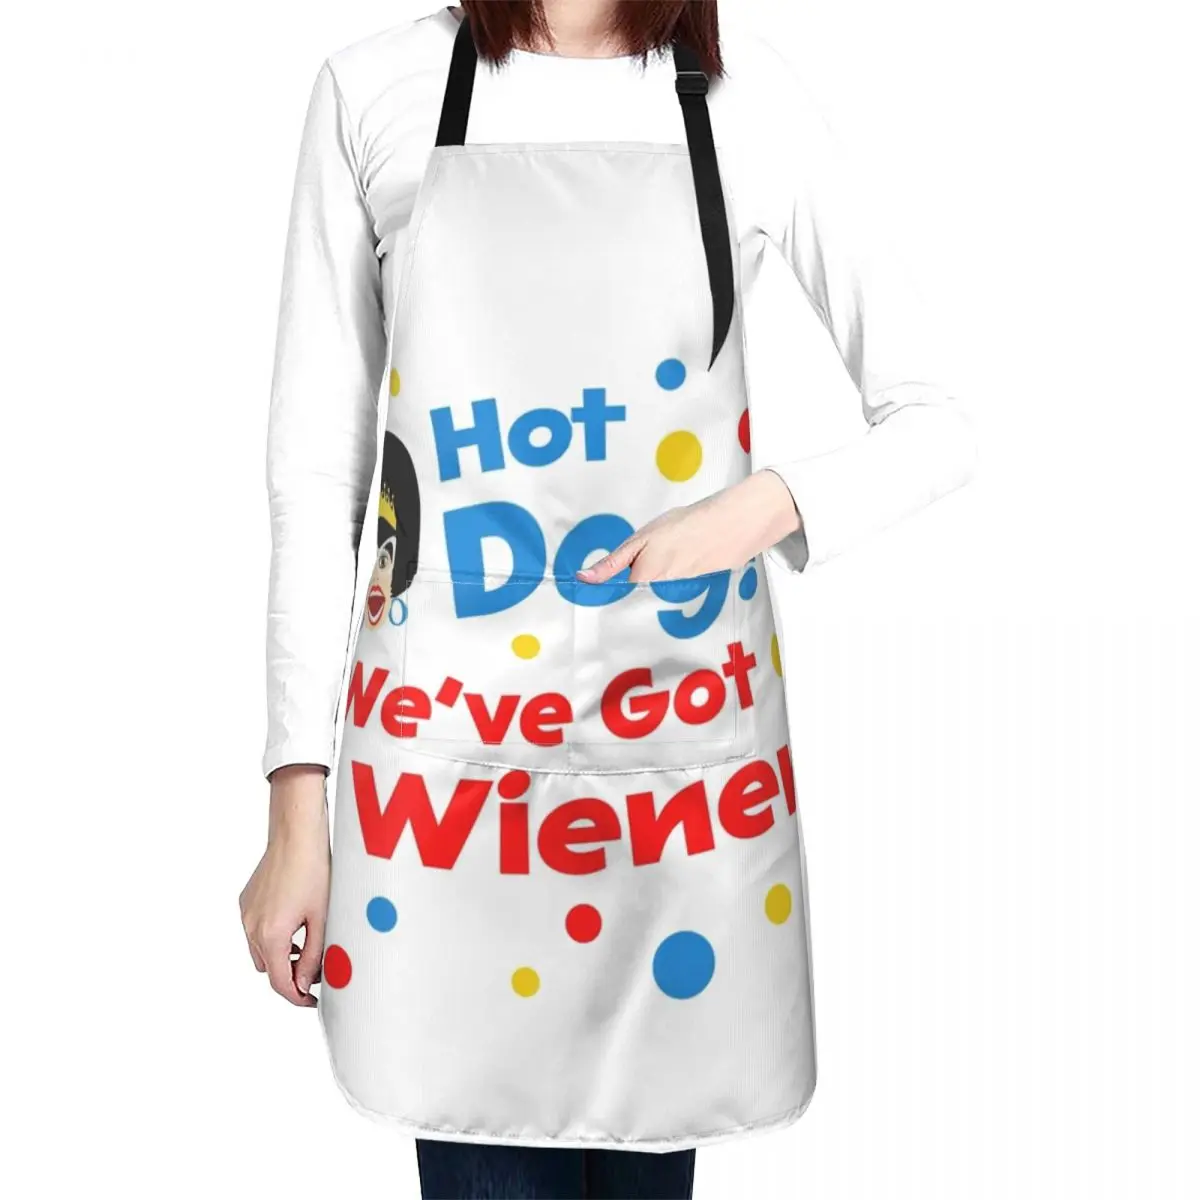 Hot Dog We've got a Wiener Apron Apron For Girl kindergarten teacher apron Apron For Men Barber apron